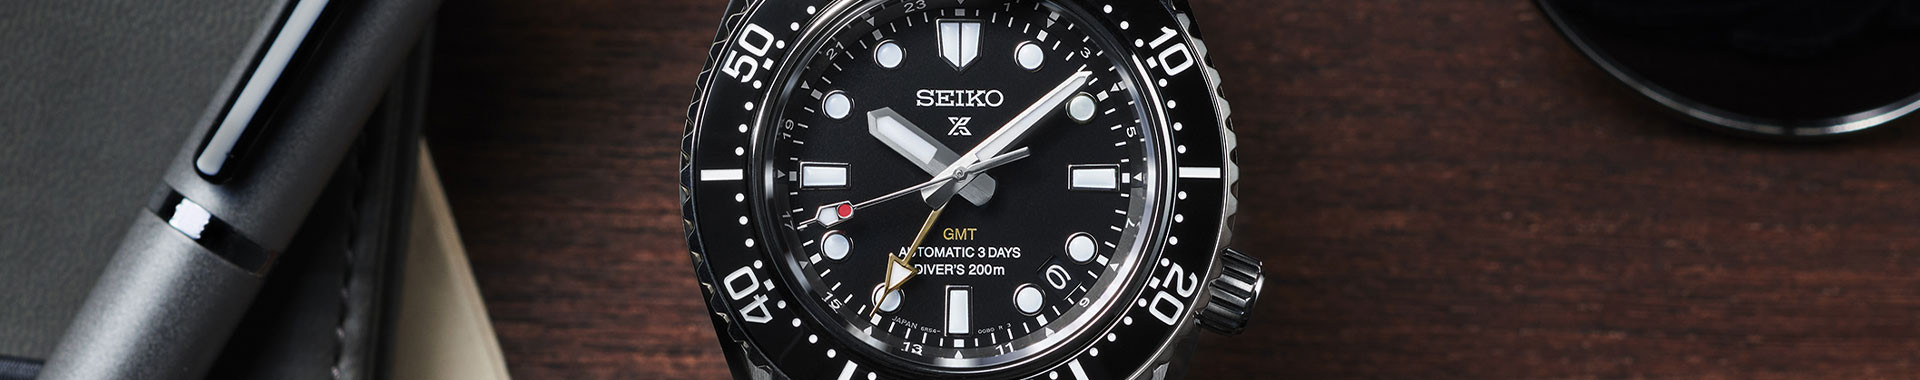 Seiko news - Seiko Official Store